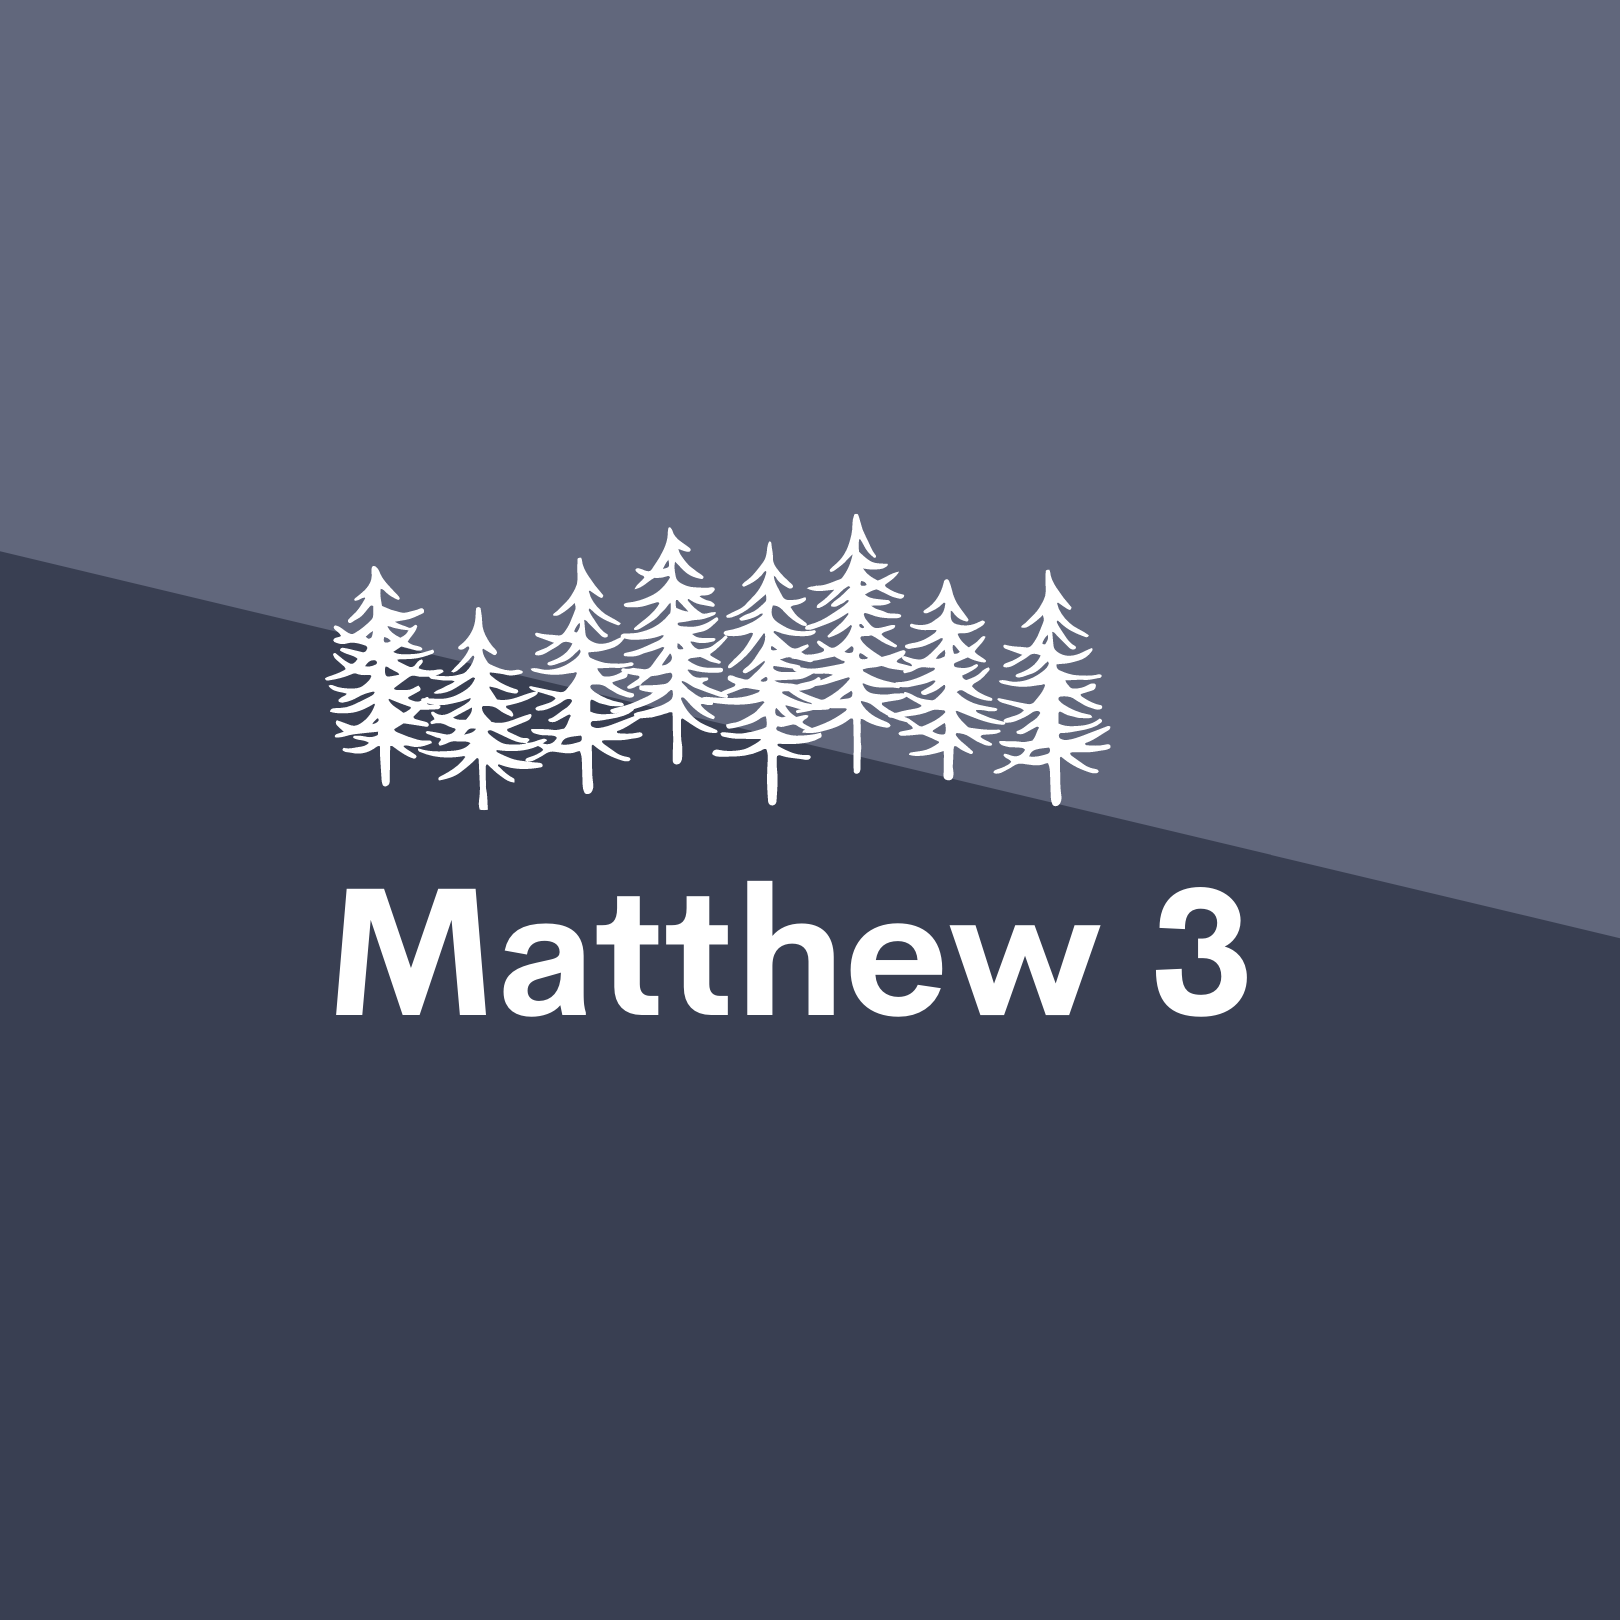 Jan 6: Matthew 3